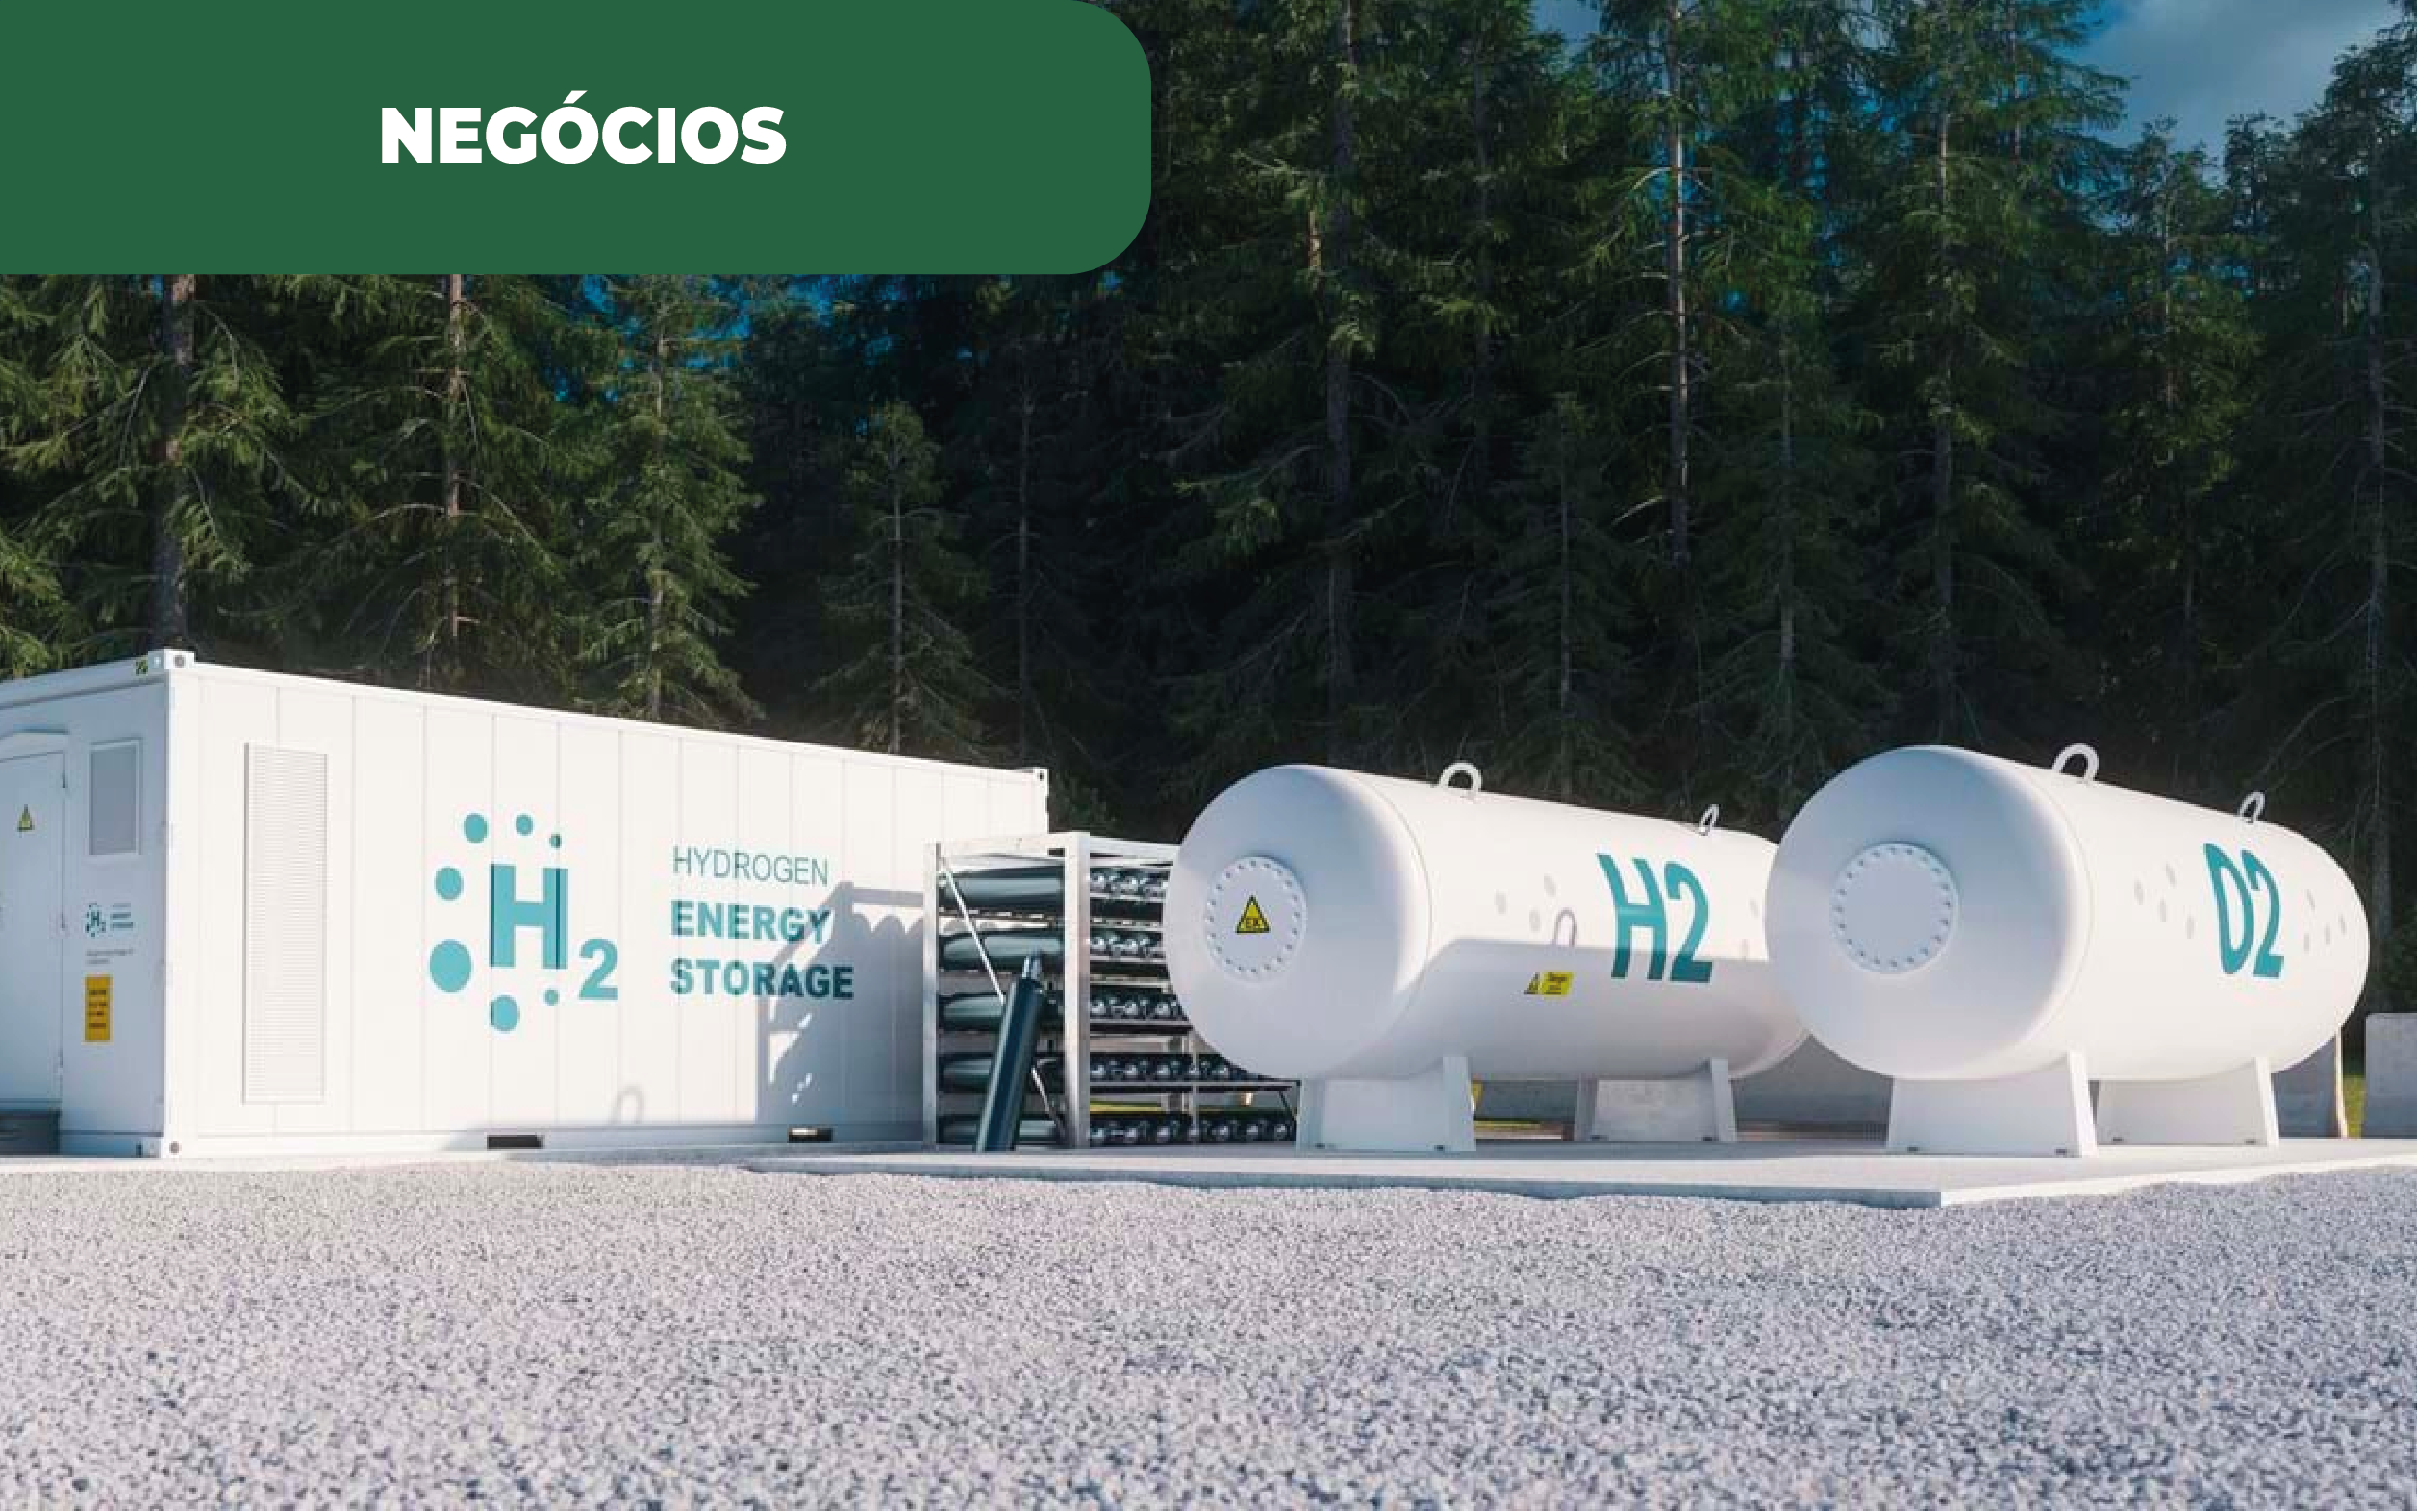 Imagem ilustrativa de tanques para hidrogénio. O desenvolvimento de mais projetos de energia em Portugal, está a cargo da Rega Energy com 60 milhões de financiamento, para o seu desenvolvimento.